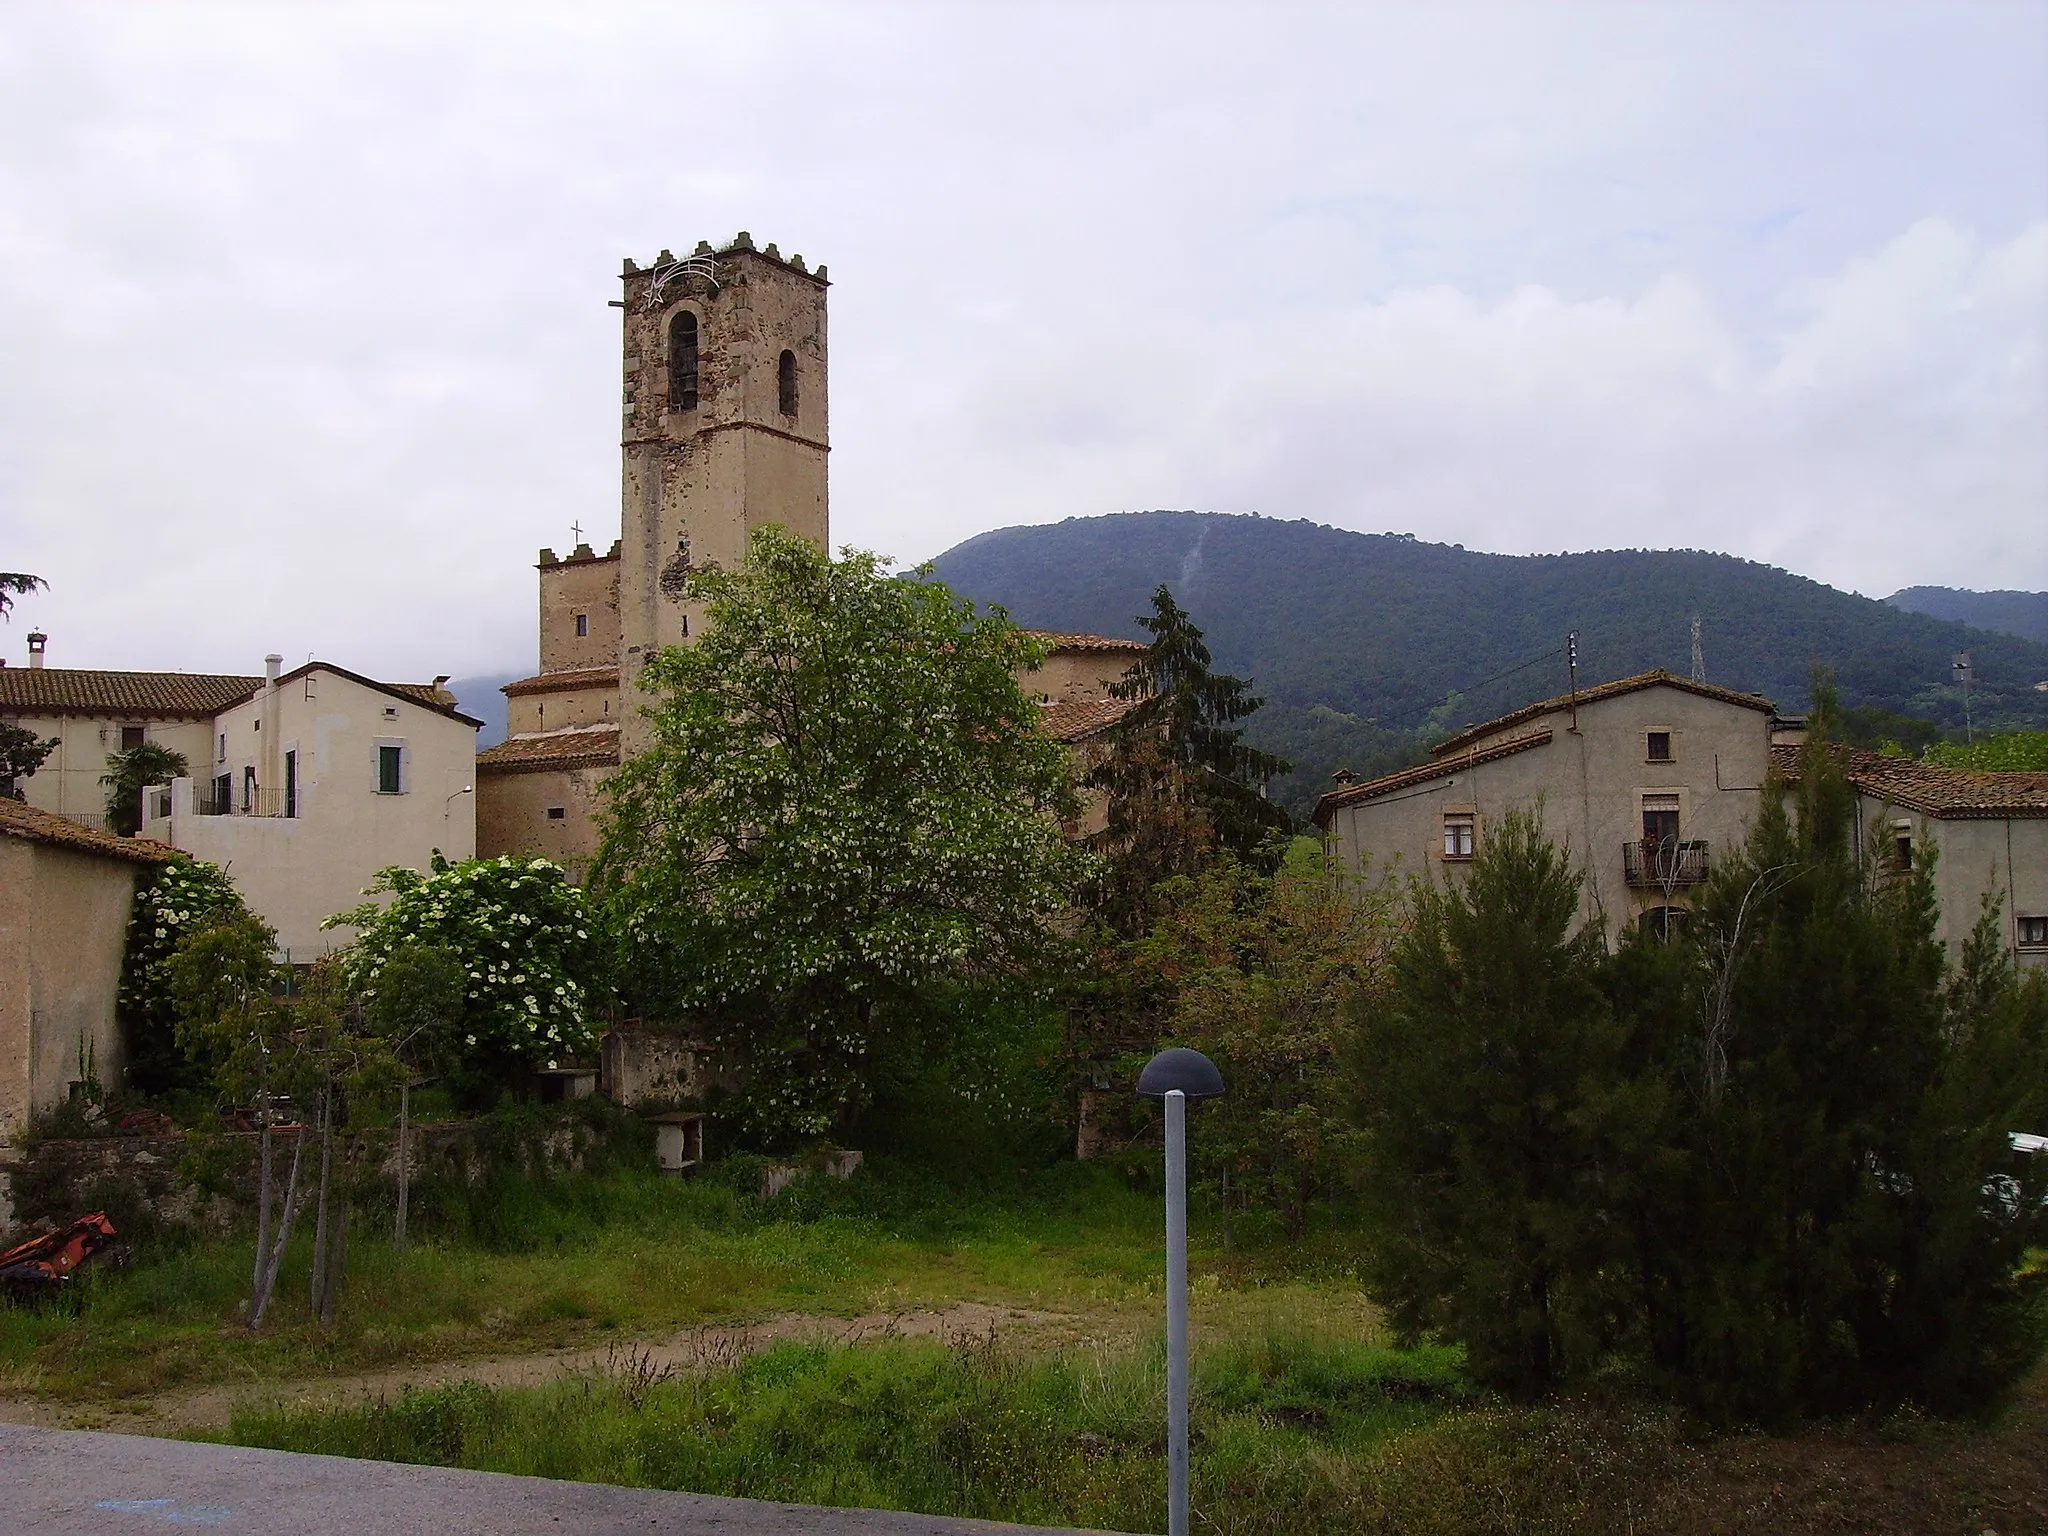 Photo showing: Imatge del municipi de Cànoves, Vallès Oriental,Catalunya, amb l'església de Sant Muç al centre de la imatge.